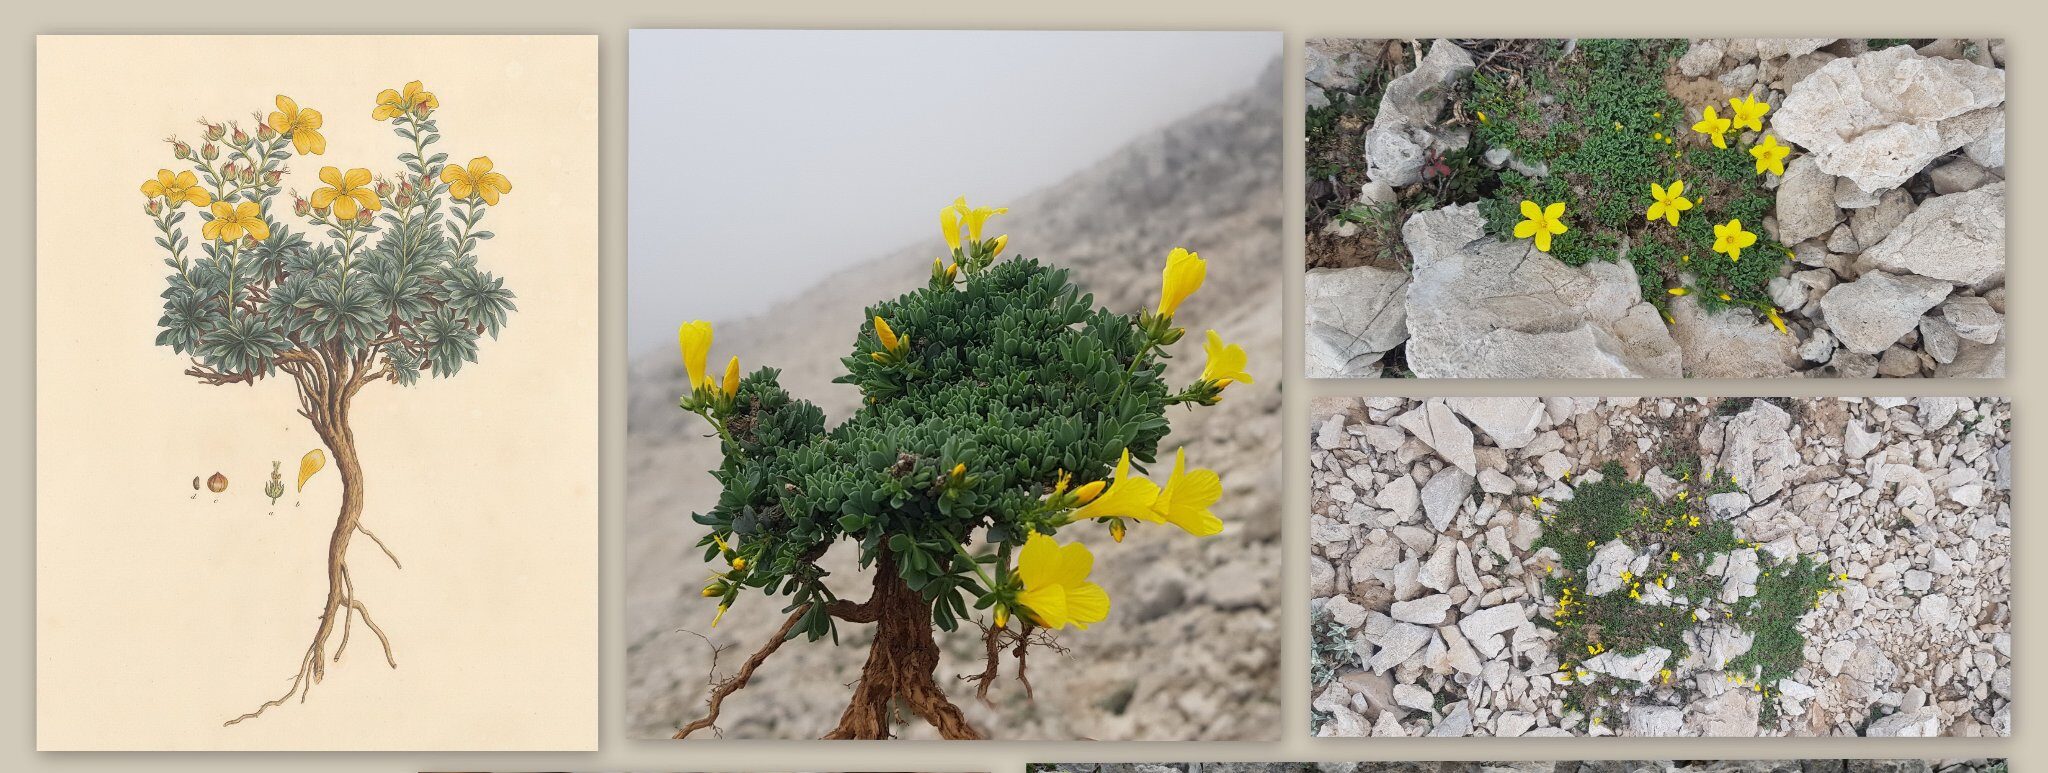 Ο κόσμος των φυτών – Τα φυτά από τη Μινωική Κρήτη μέχρι σήμερα